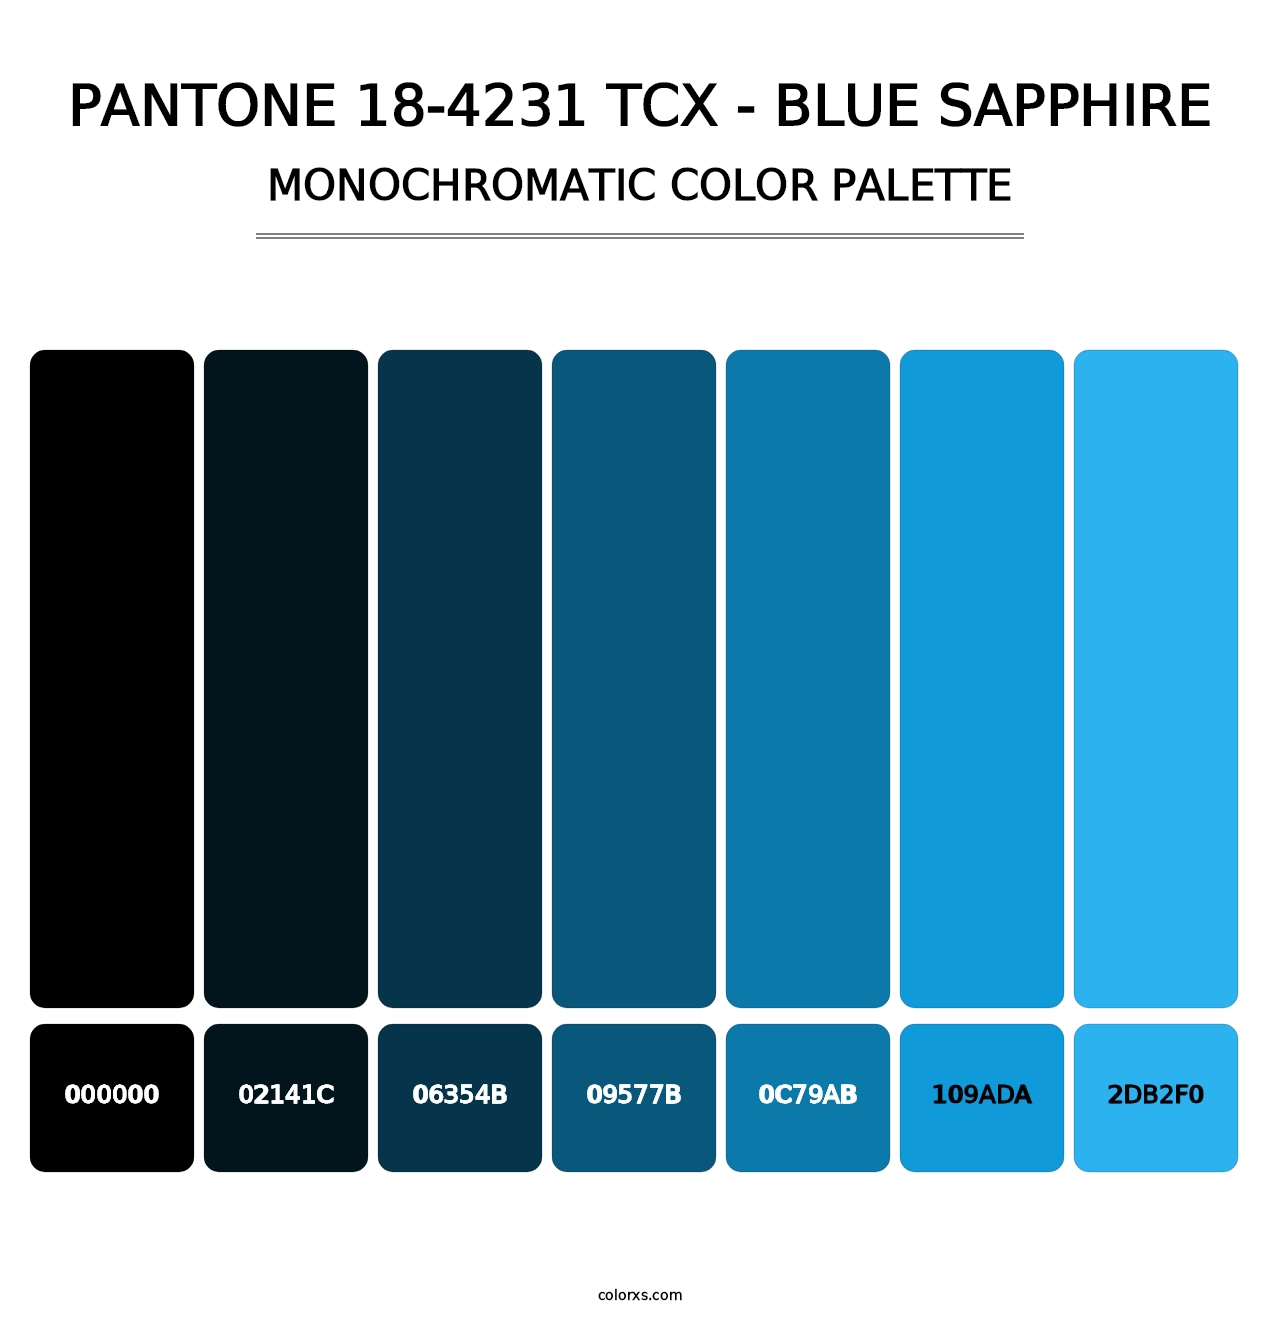 PANTONE 18-4231 TCX - Blue Sapphire - Monochromatic Color Palette